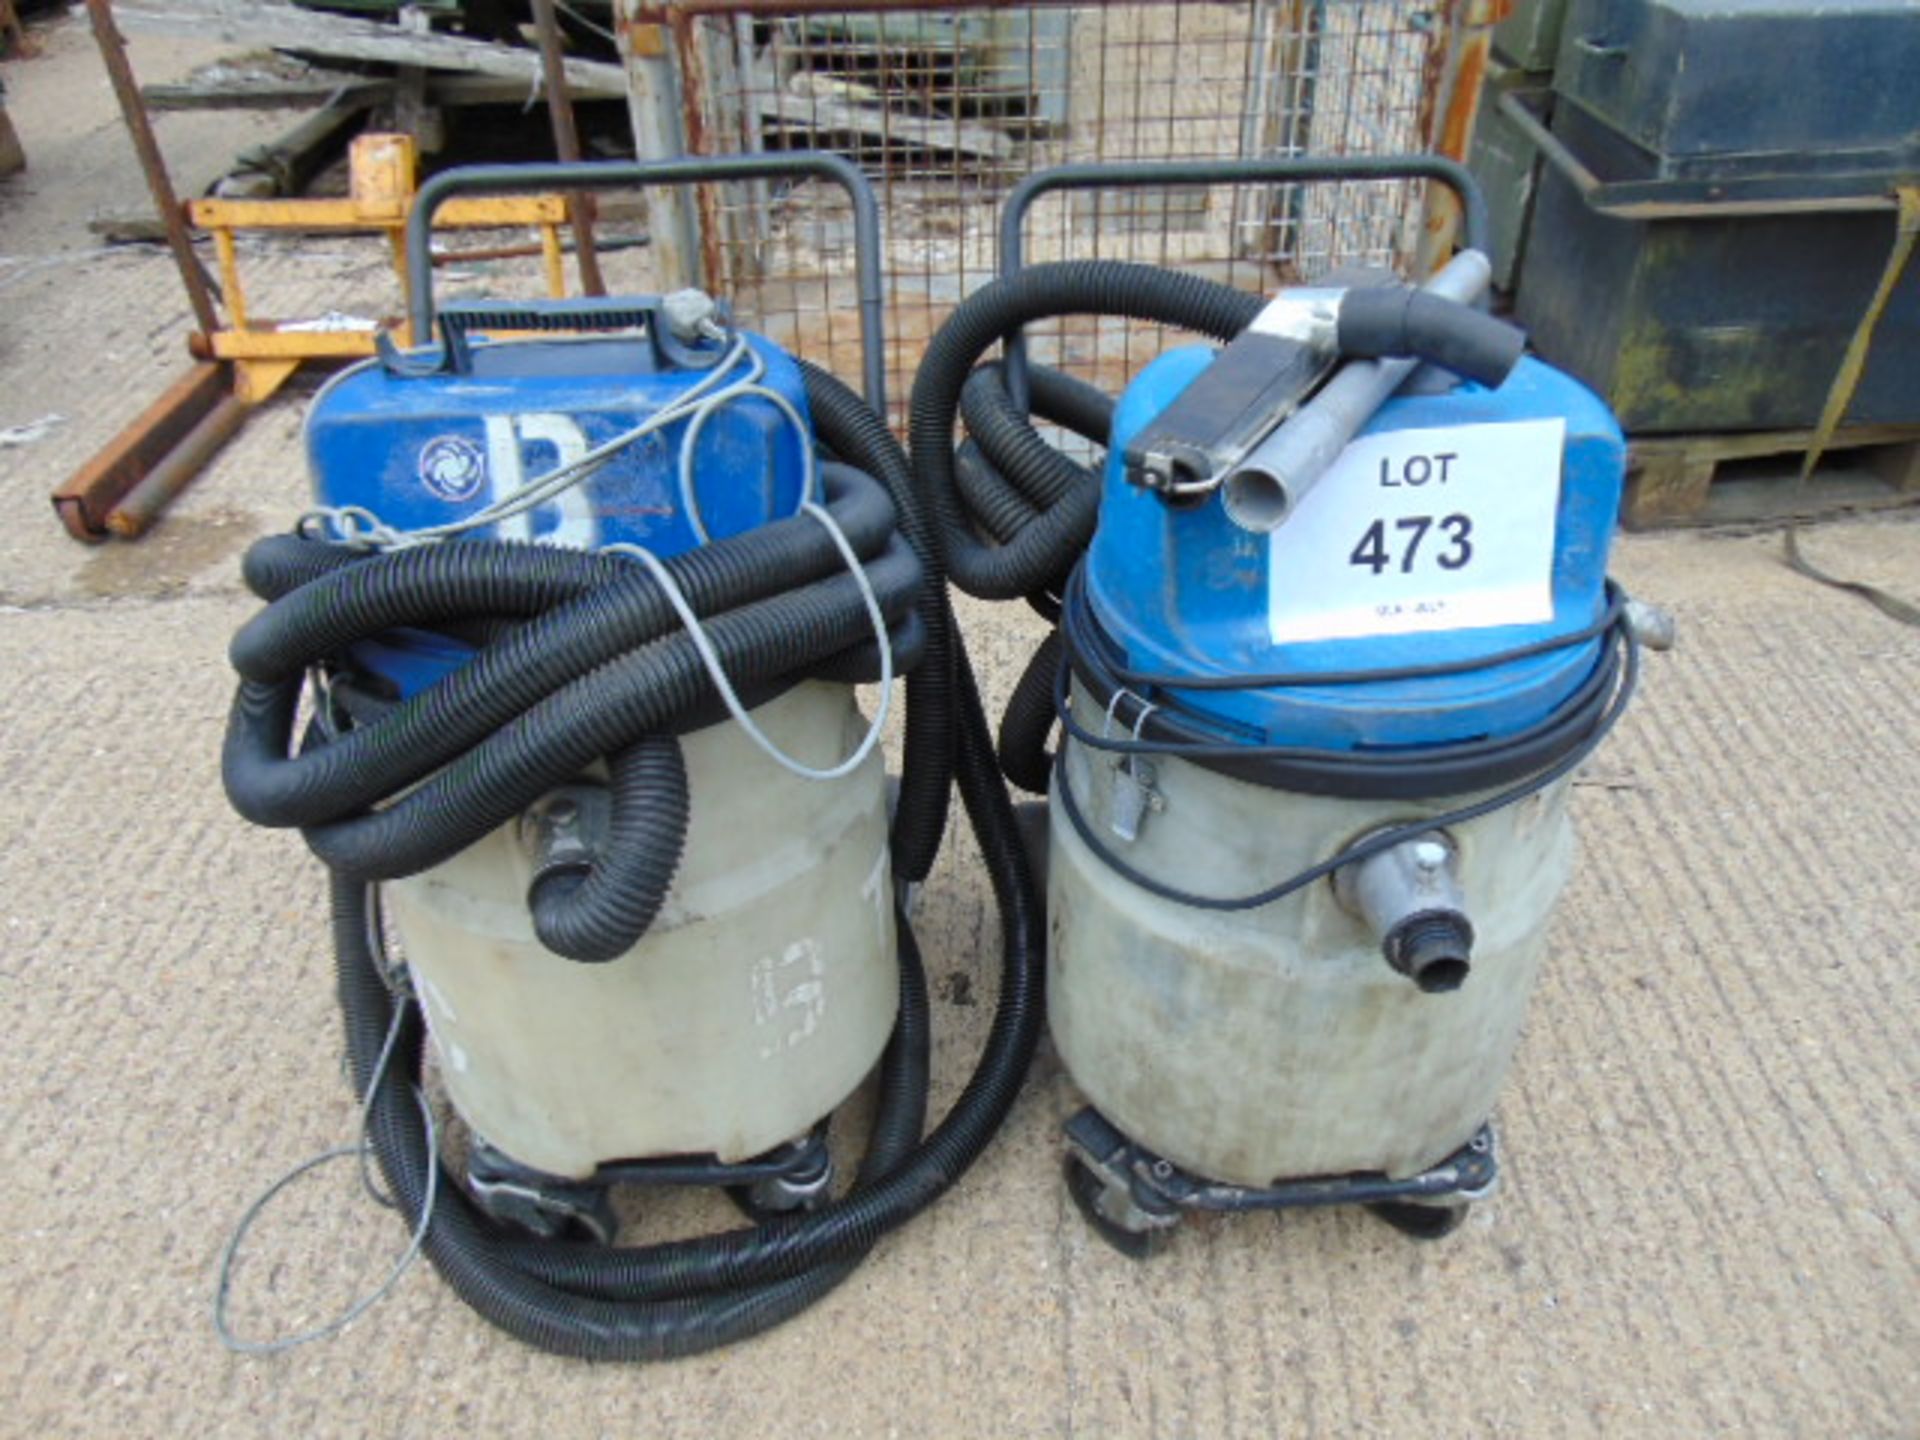 2 x Nilfisk Hipower Industrial Vacuum Cleaners